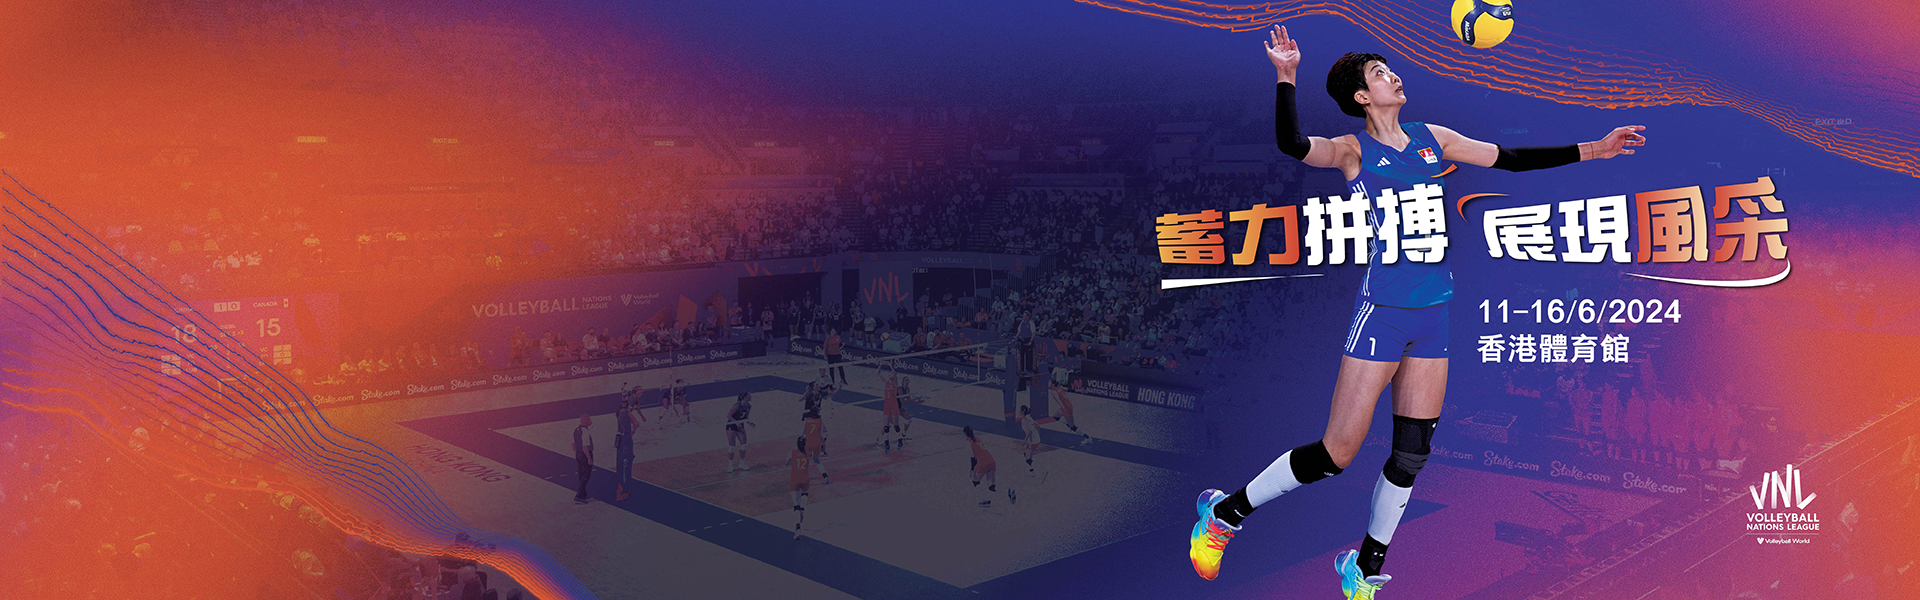 Volleyball Nations League Hong Kong 2024